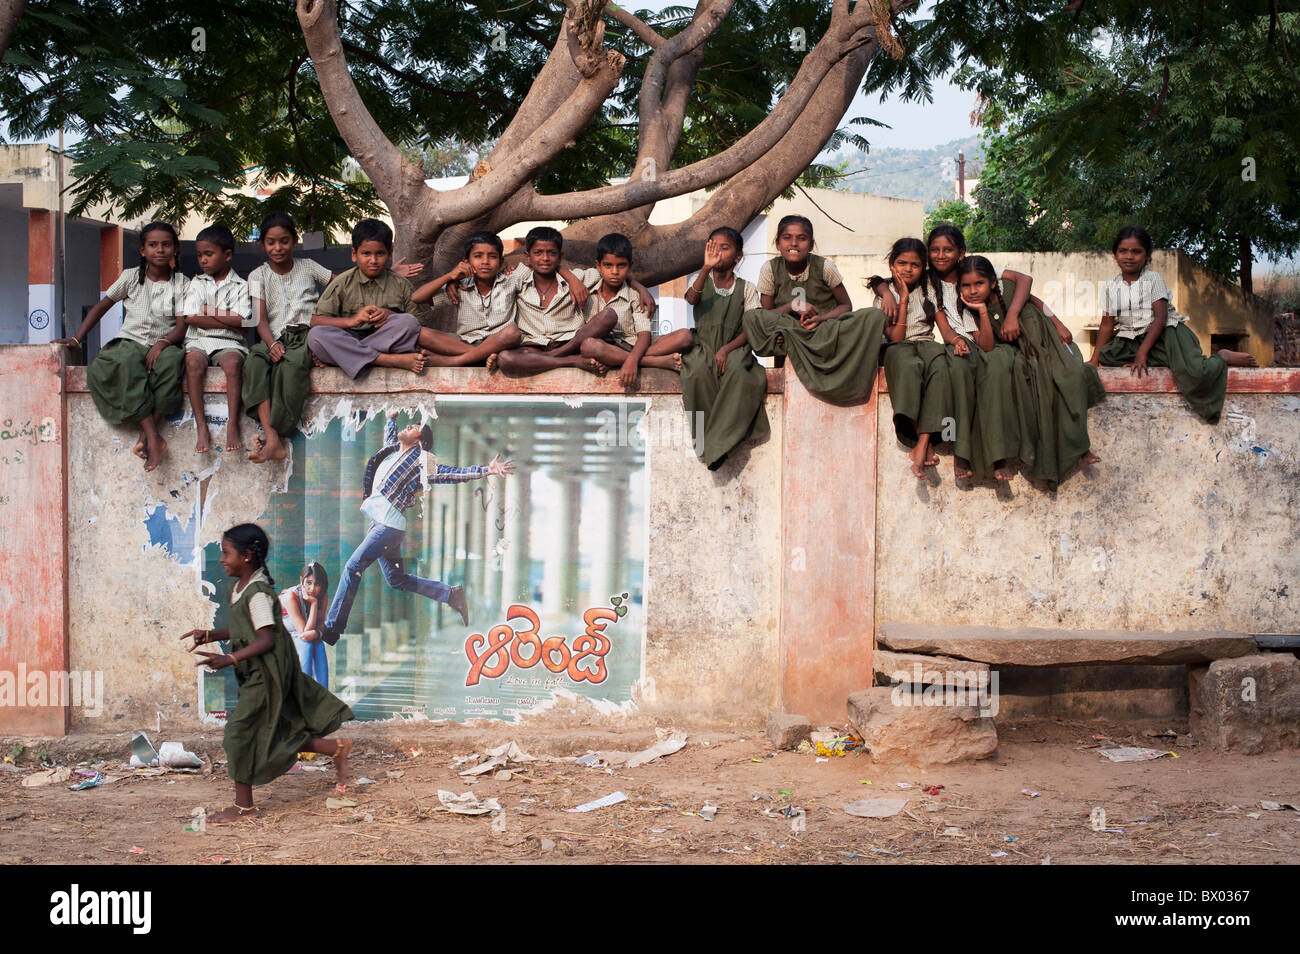 Les enfants de l'école village assis sur leur mur d'école. L'Andhra Pradesh, Inde Banque D'Images